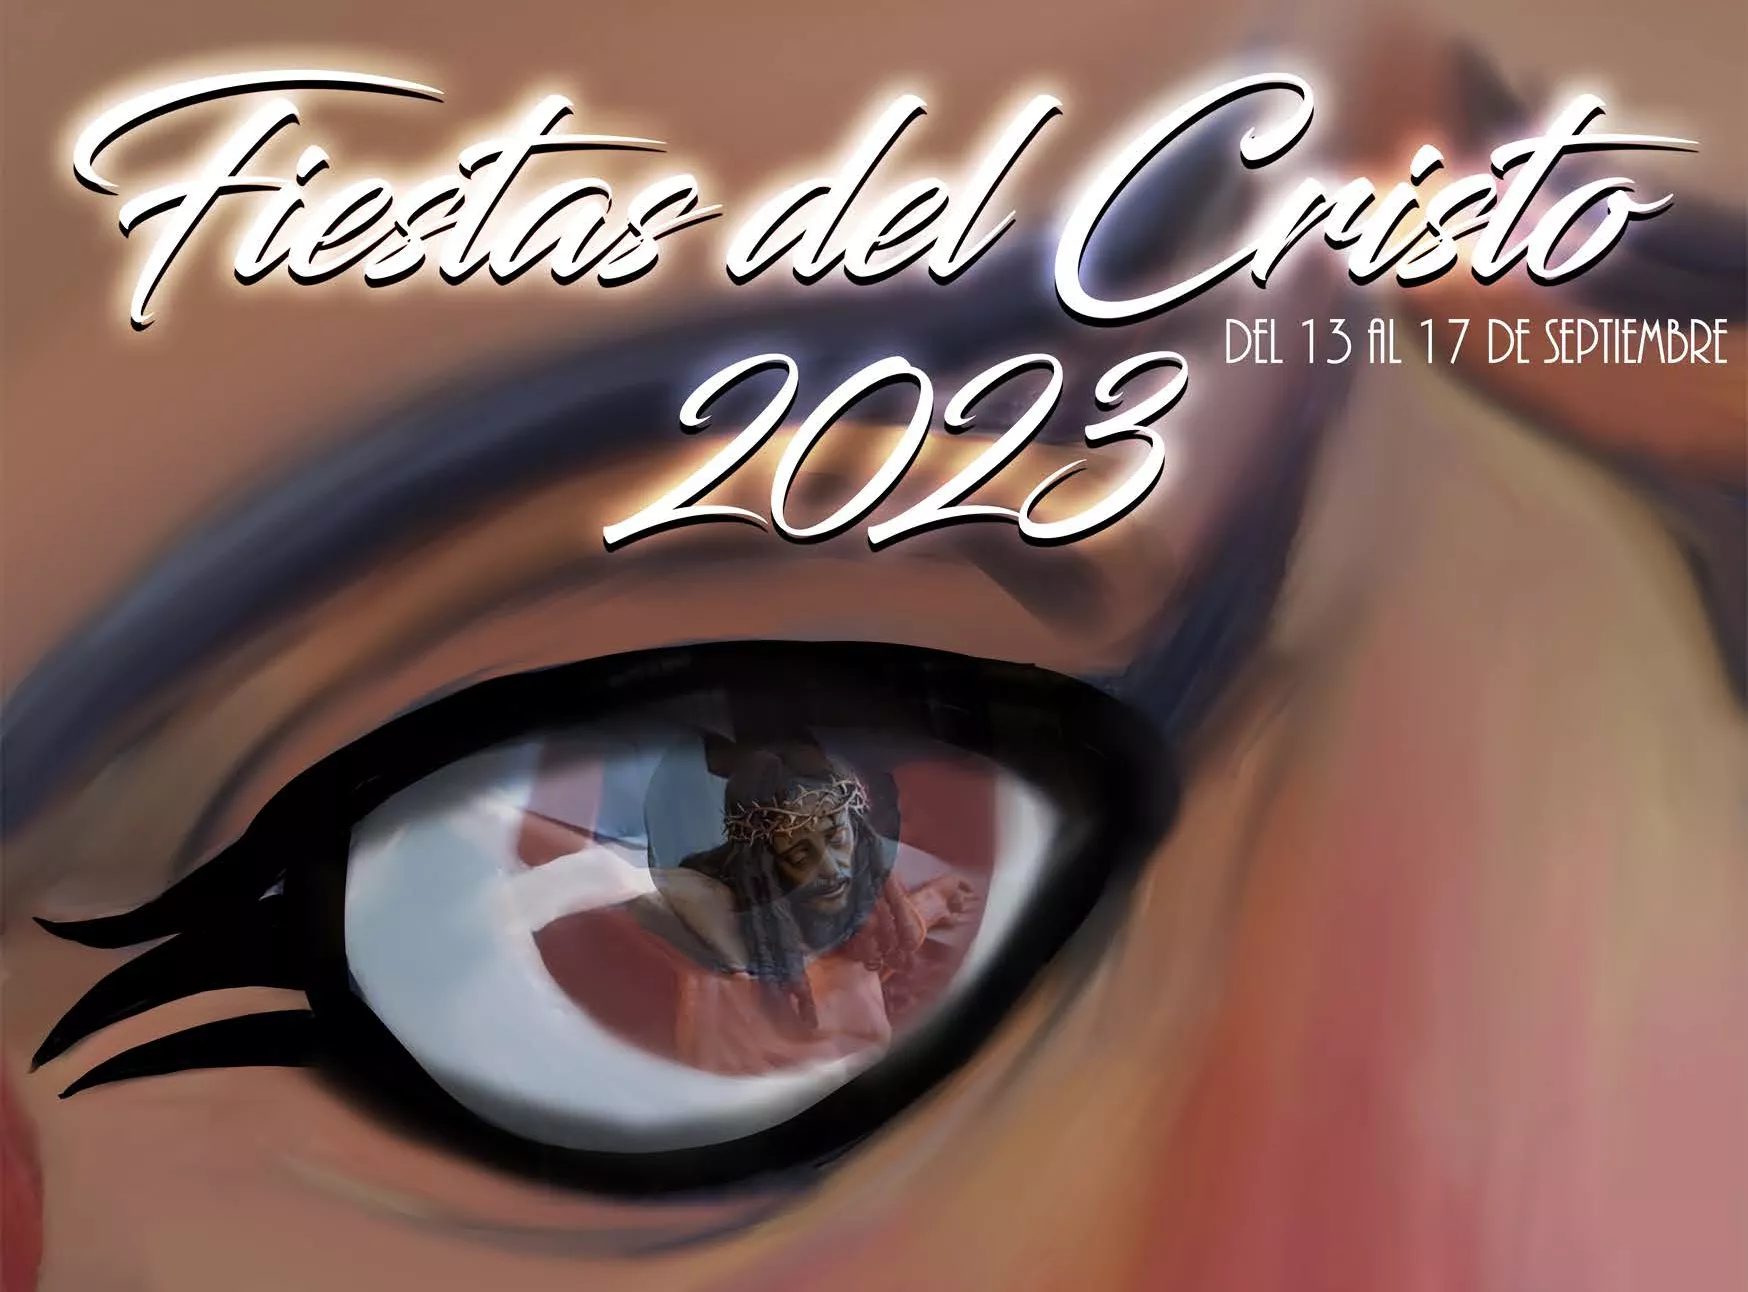 Cartel del programa de las Fiestas del Cristo de Villafranca del Bierzo 2023